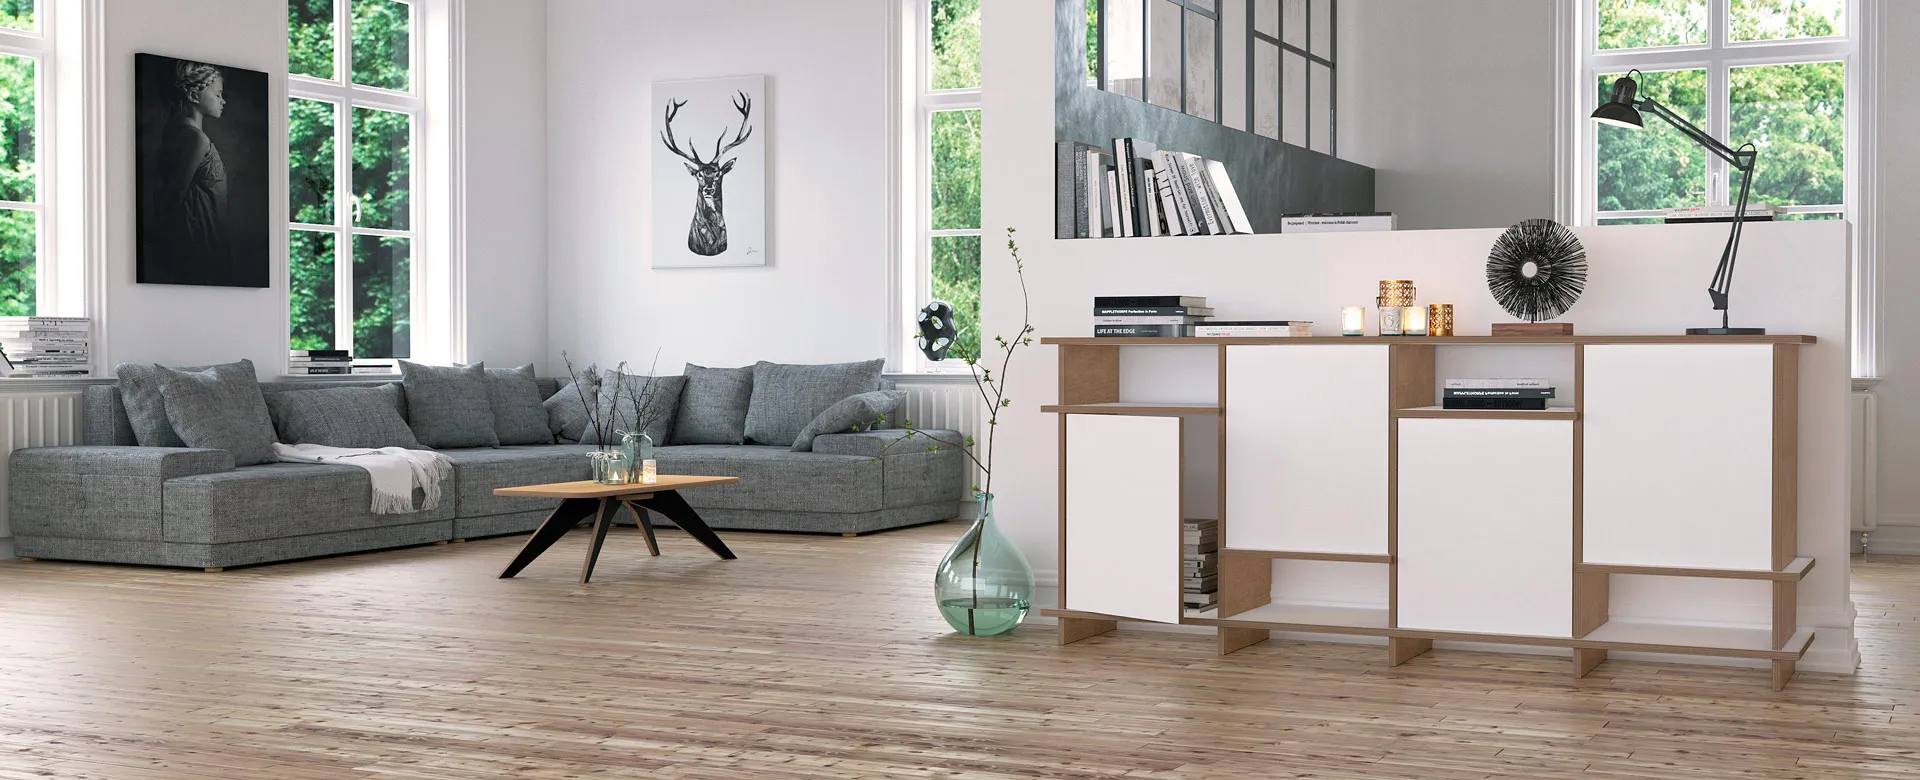 So findest du die perfekten Möbel für dein modernes Zuhause   form.bar